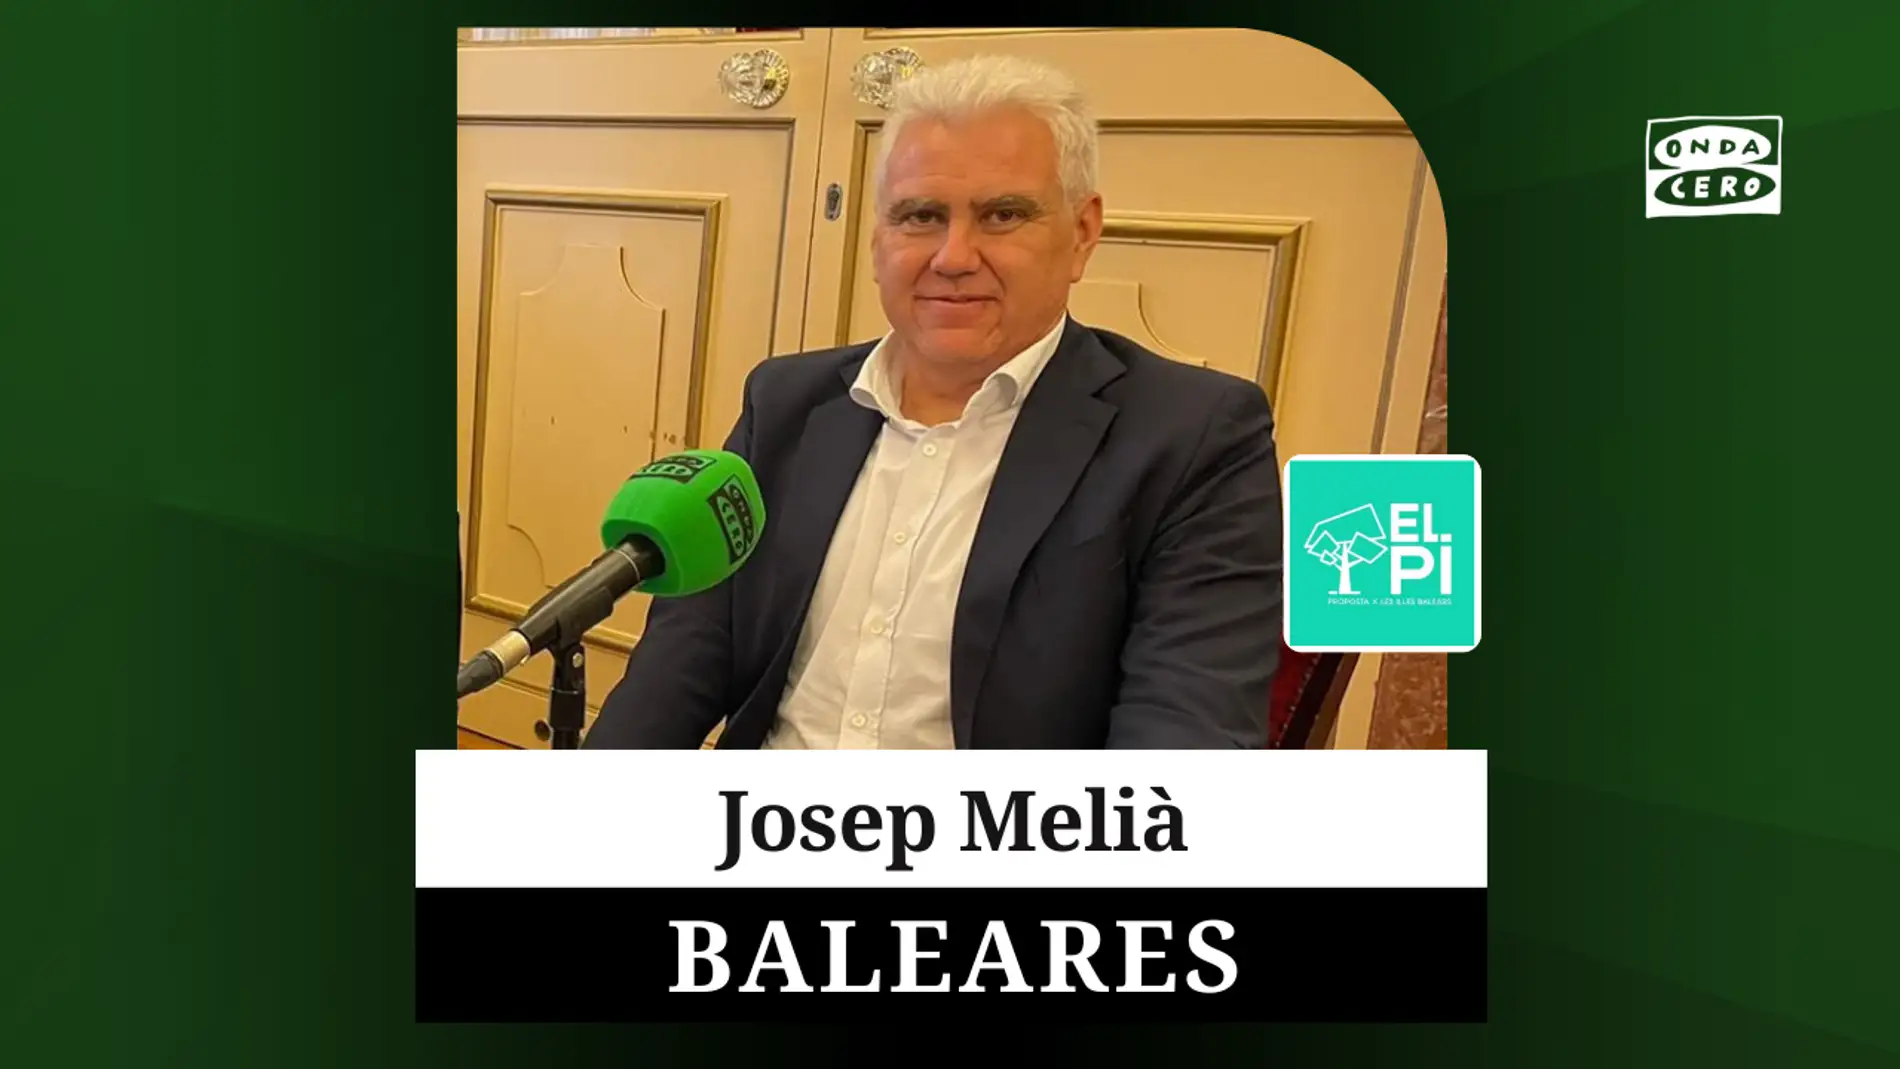 El candidato de El Pi, Josep Melià, de centro-derecha, pero alejado de los "extremismos"